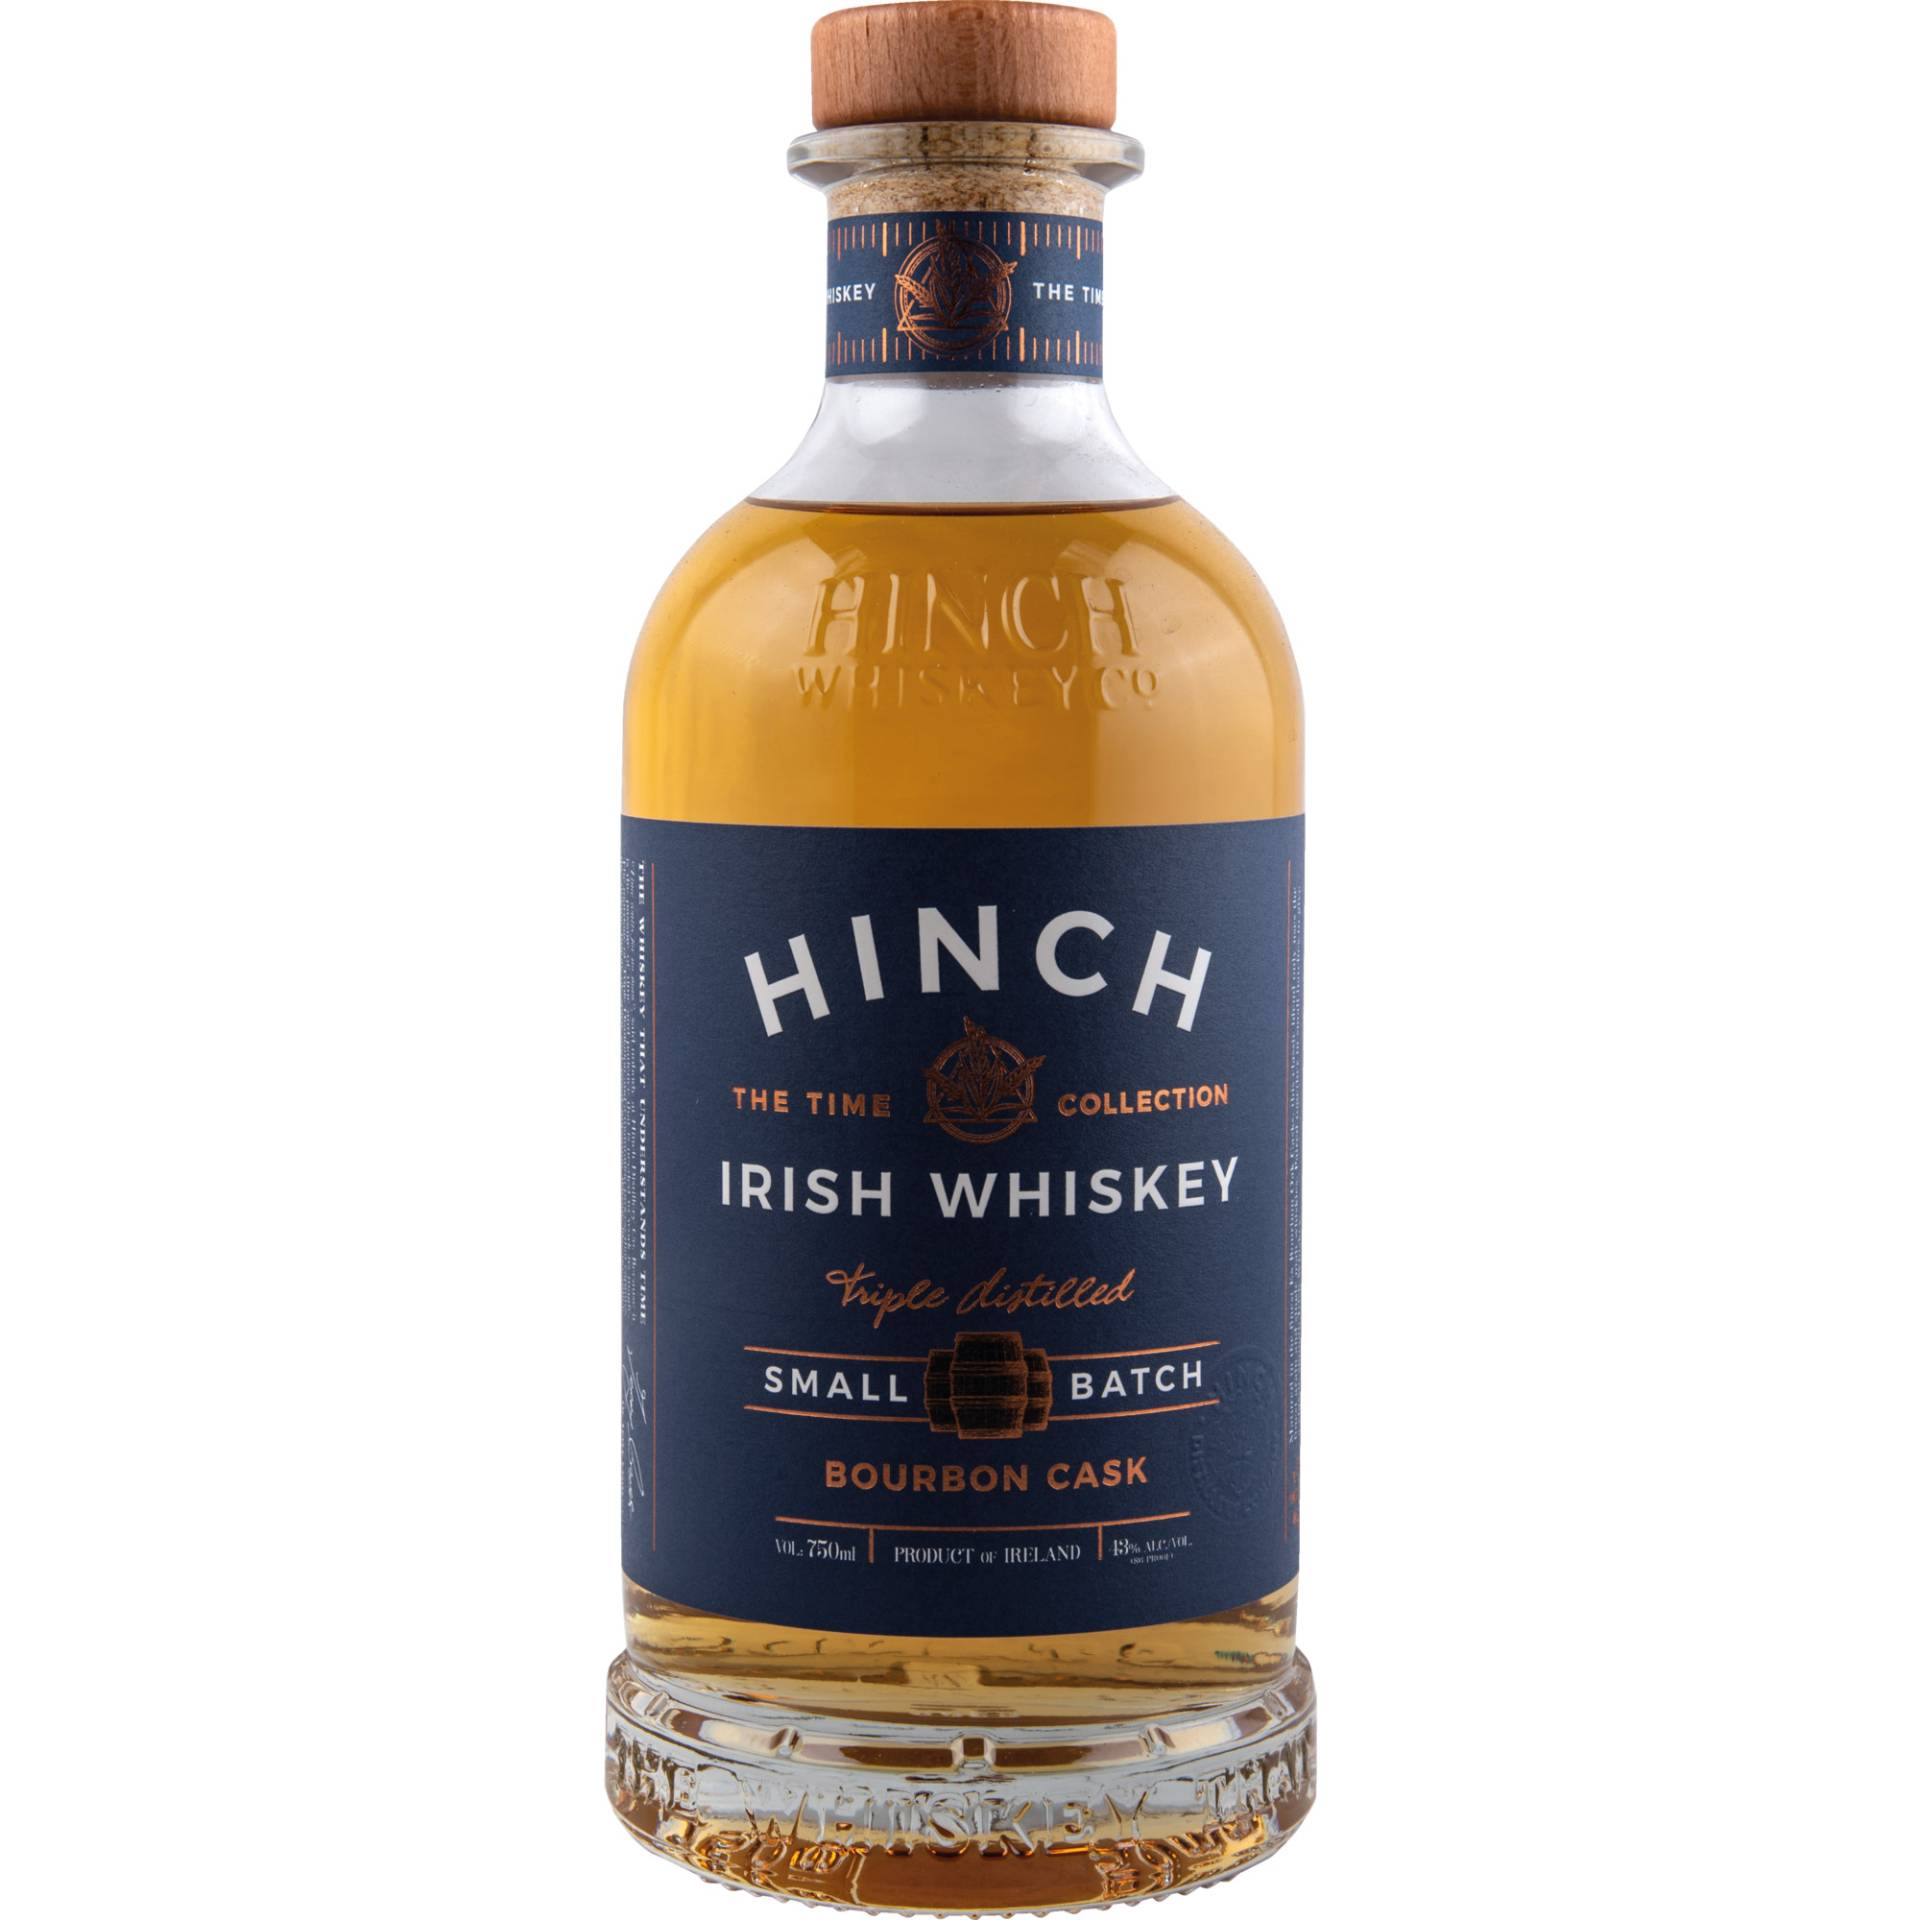 Hinch Small Batch Bourbon Cask, Irish Whiskey, Irland, 0,7 L, 43 Vol., Spirituosen von Hinch Distillery Ltd. 19 Carryduff Road BT27 6TZ N Ireland